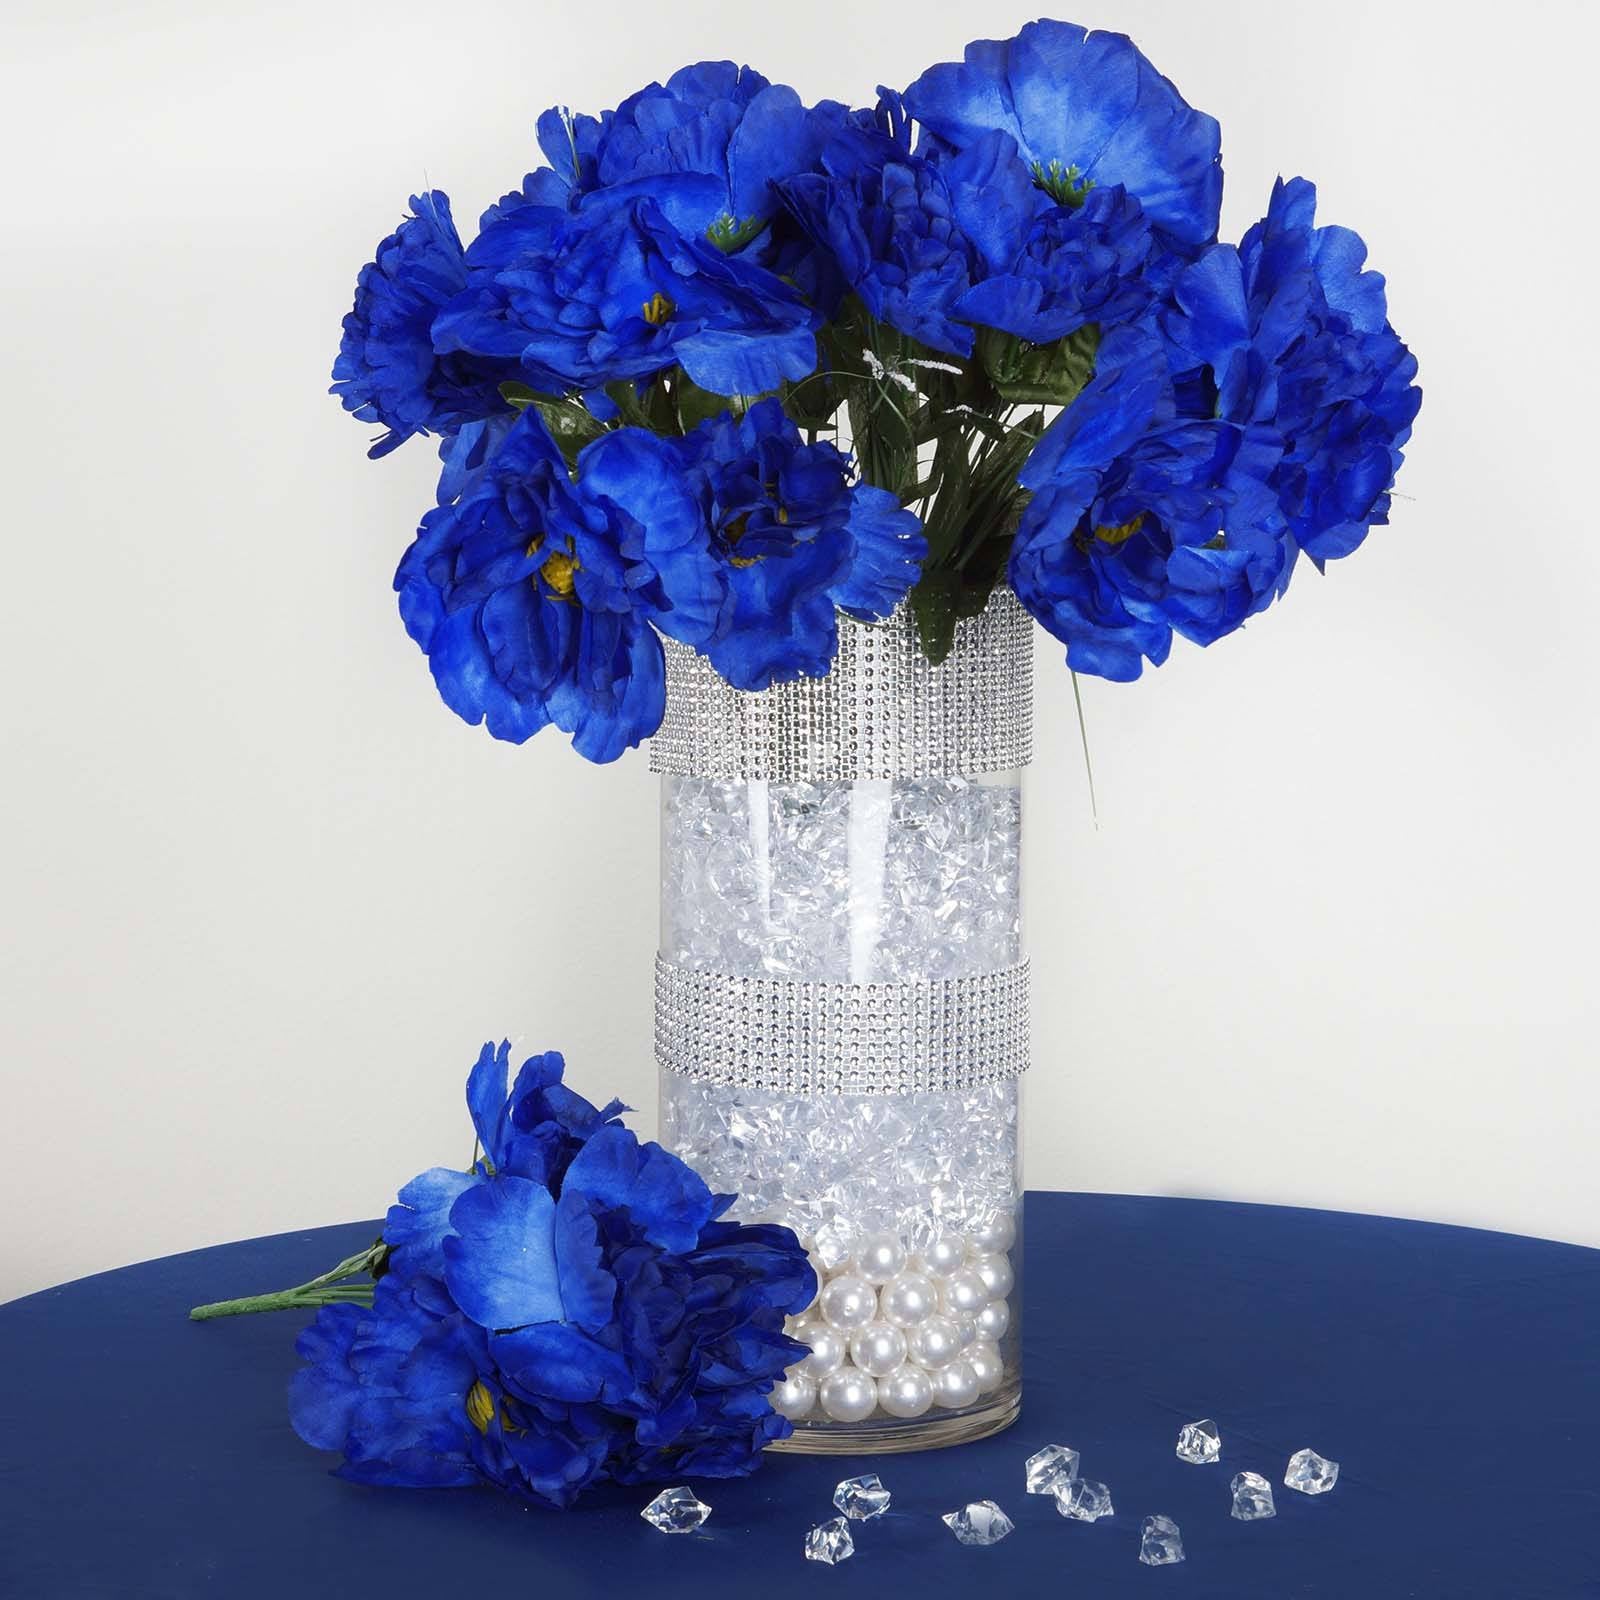 12 Bush 60 Pcs Royal Blue Artificial Silk Peony Flowers Bridal Bouquet